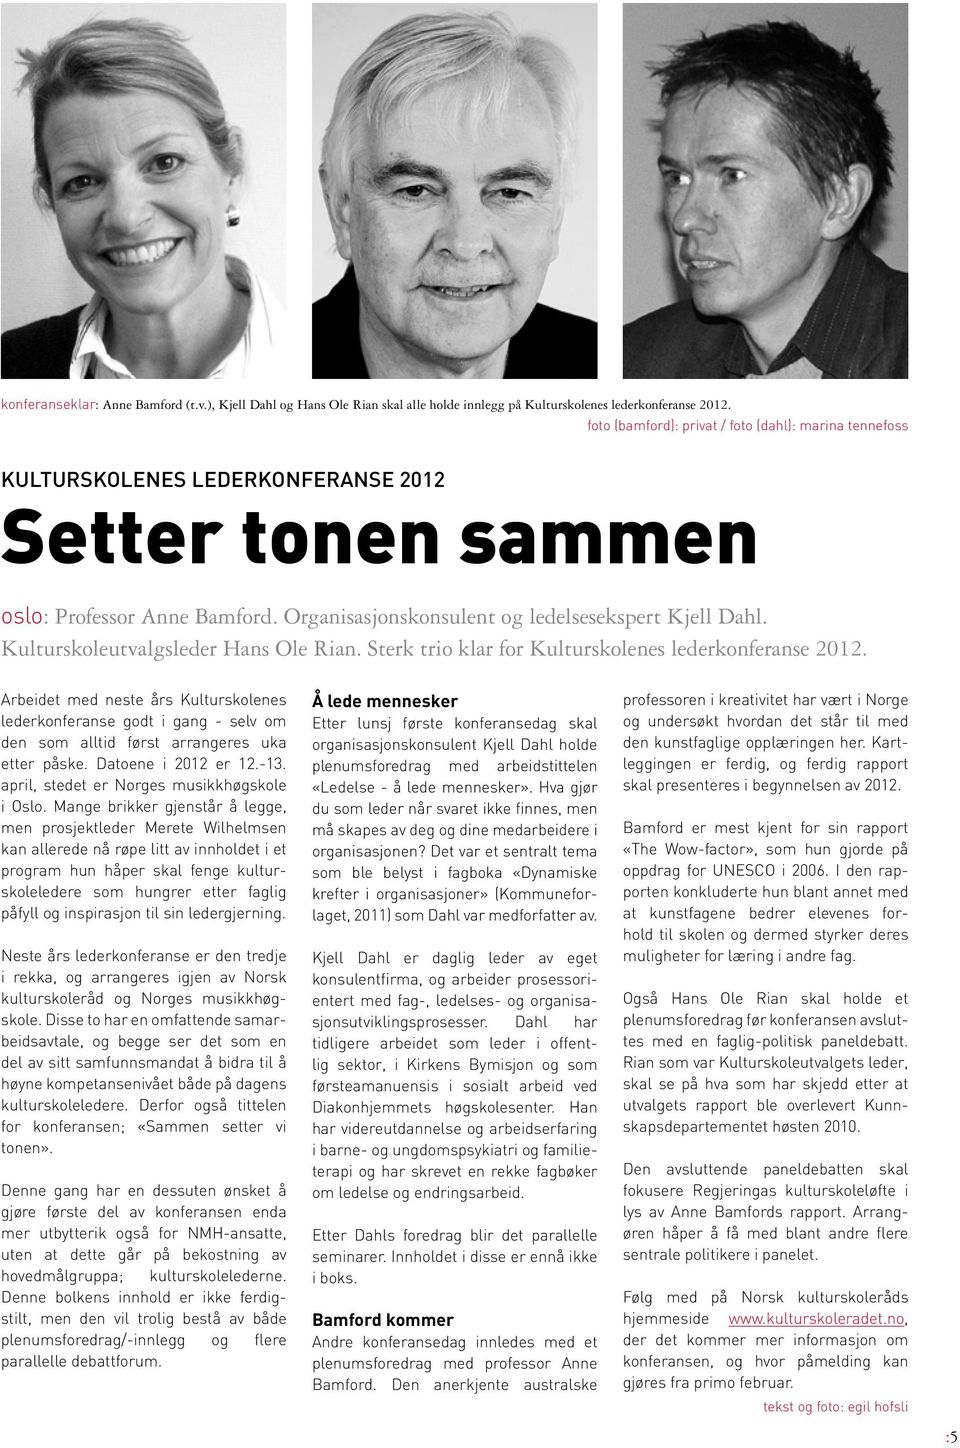 Kulturskoleutvalgsleder Hans Ole Rian. Sterk trio klar for Kulturskolenes lederkonferanse 2012.